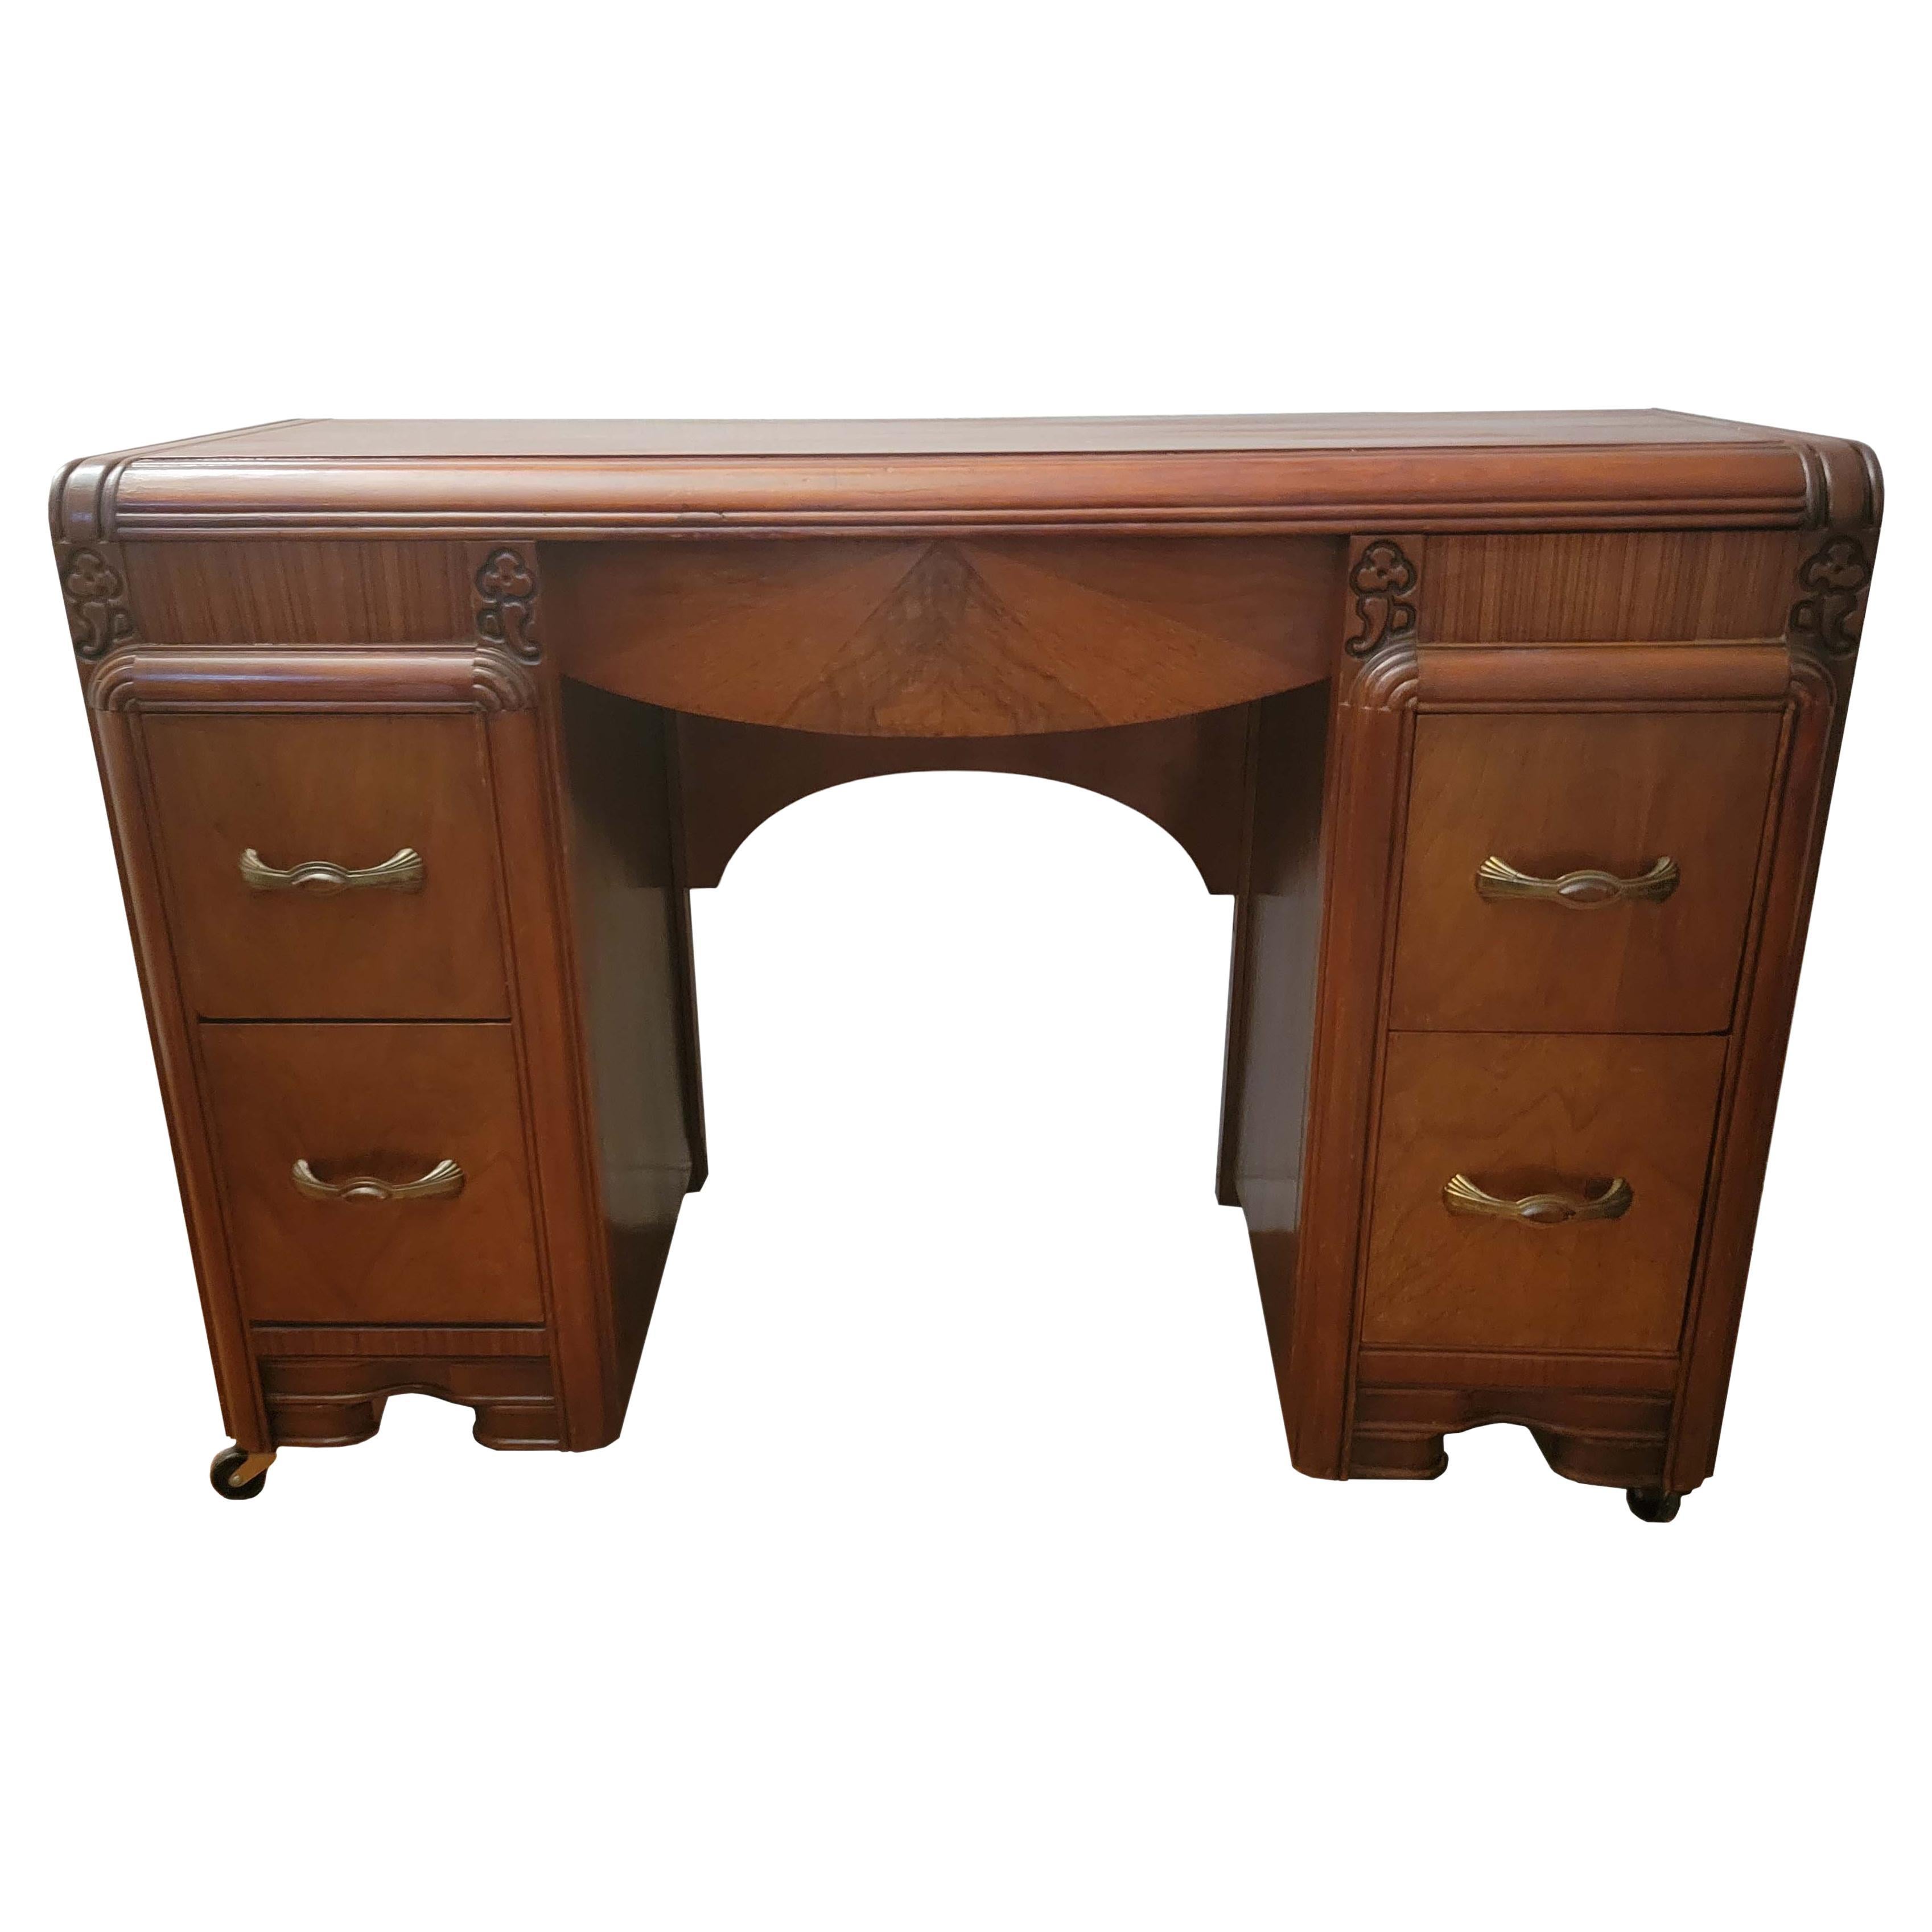 Antique Art Nouveau Vanity or Desk